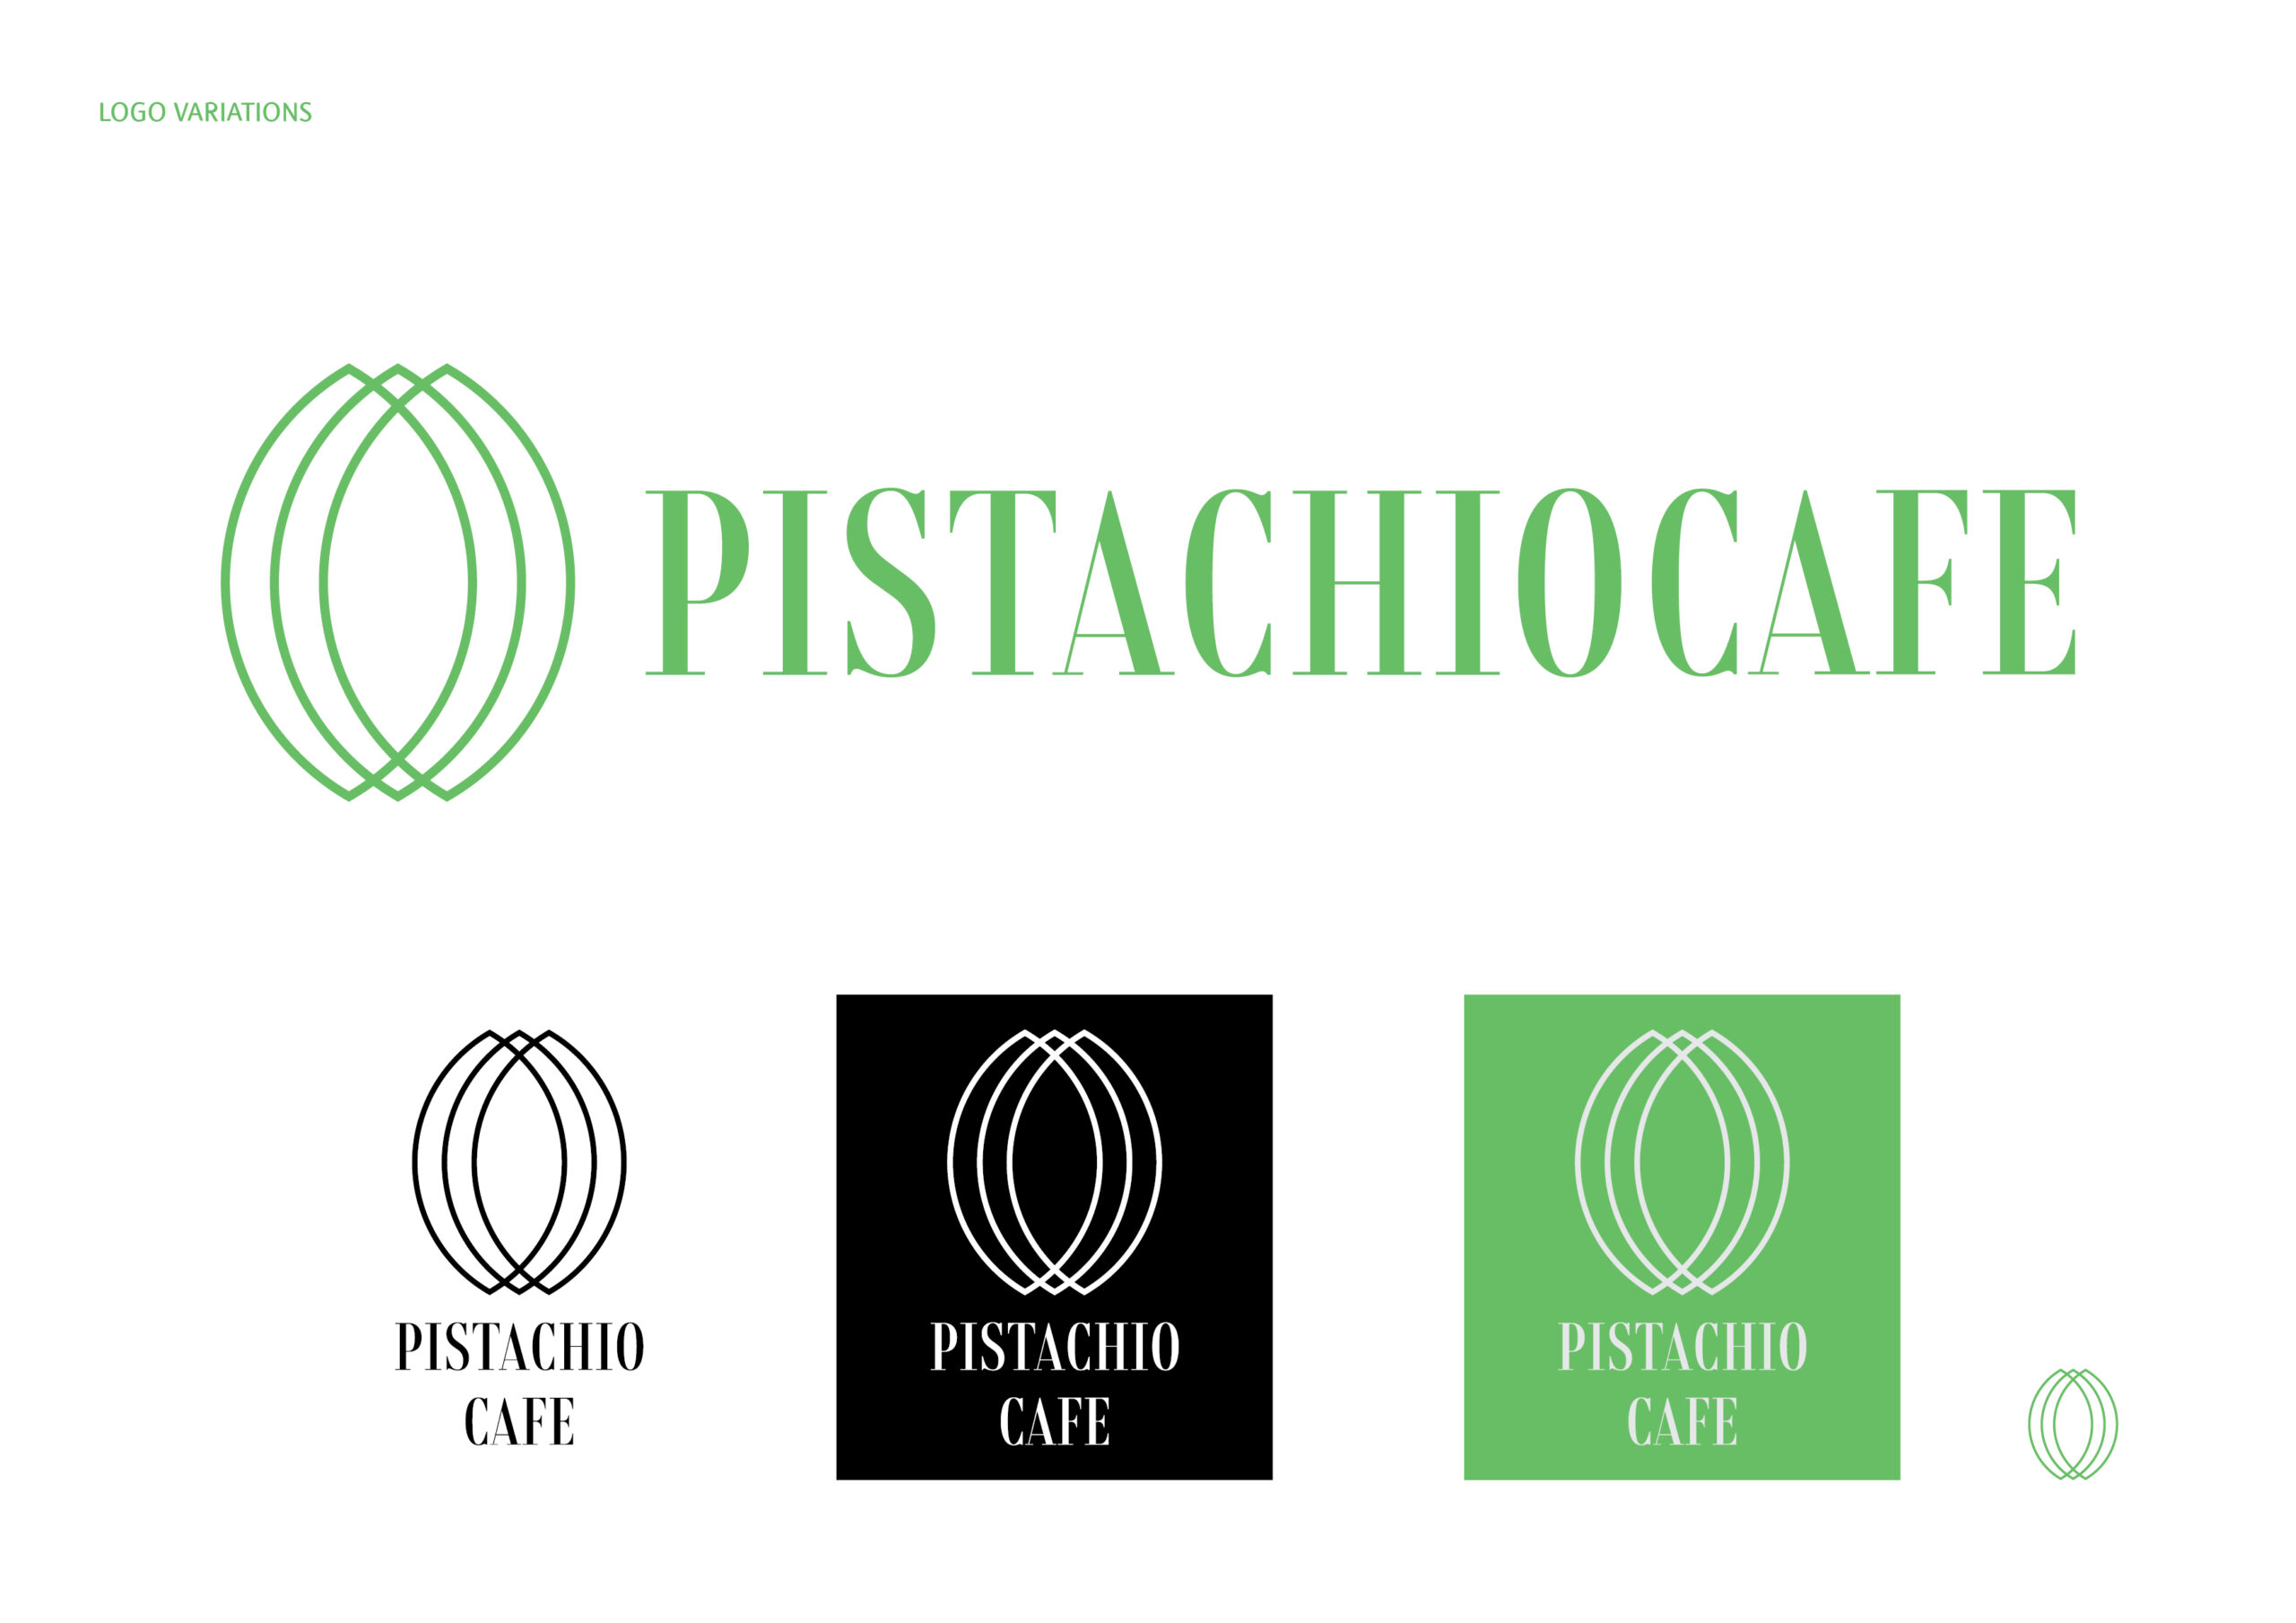 pistachio cafe logo logo variations